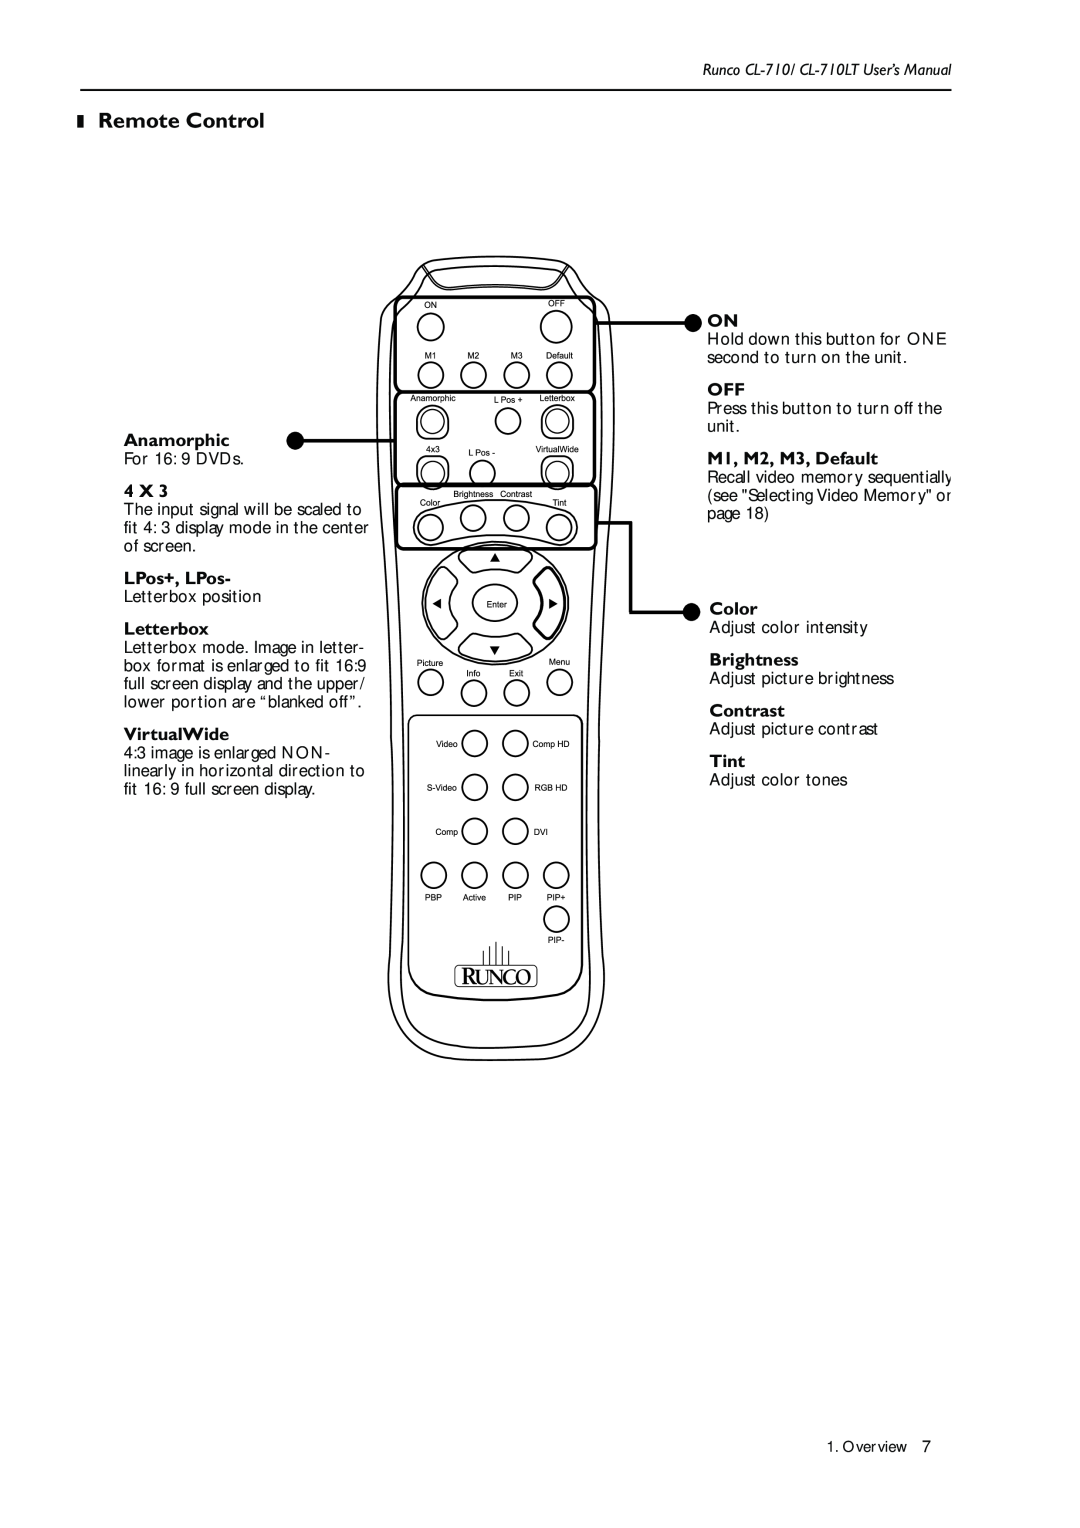 Runco CL-710LT manual Remote Control 